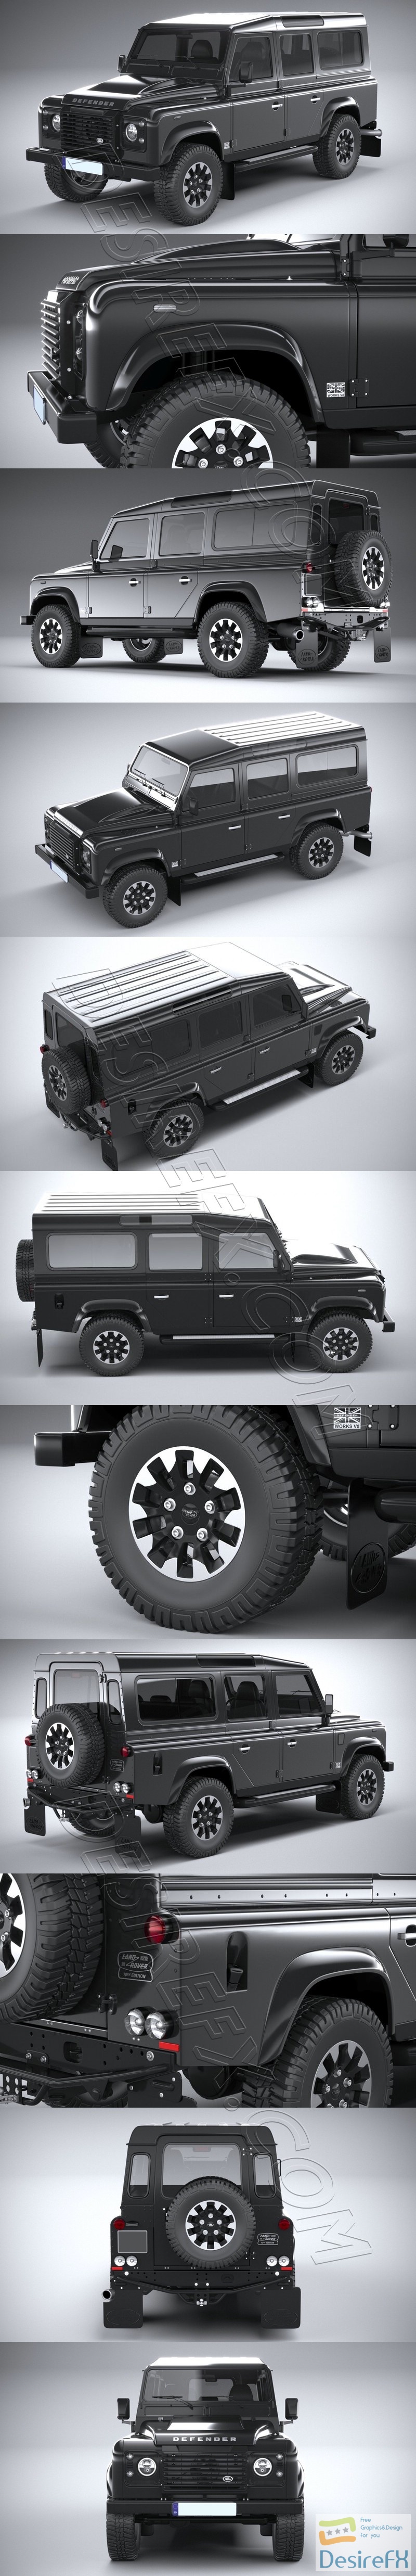 Land Rover Defender Works V8 4-door 2018 3D Model